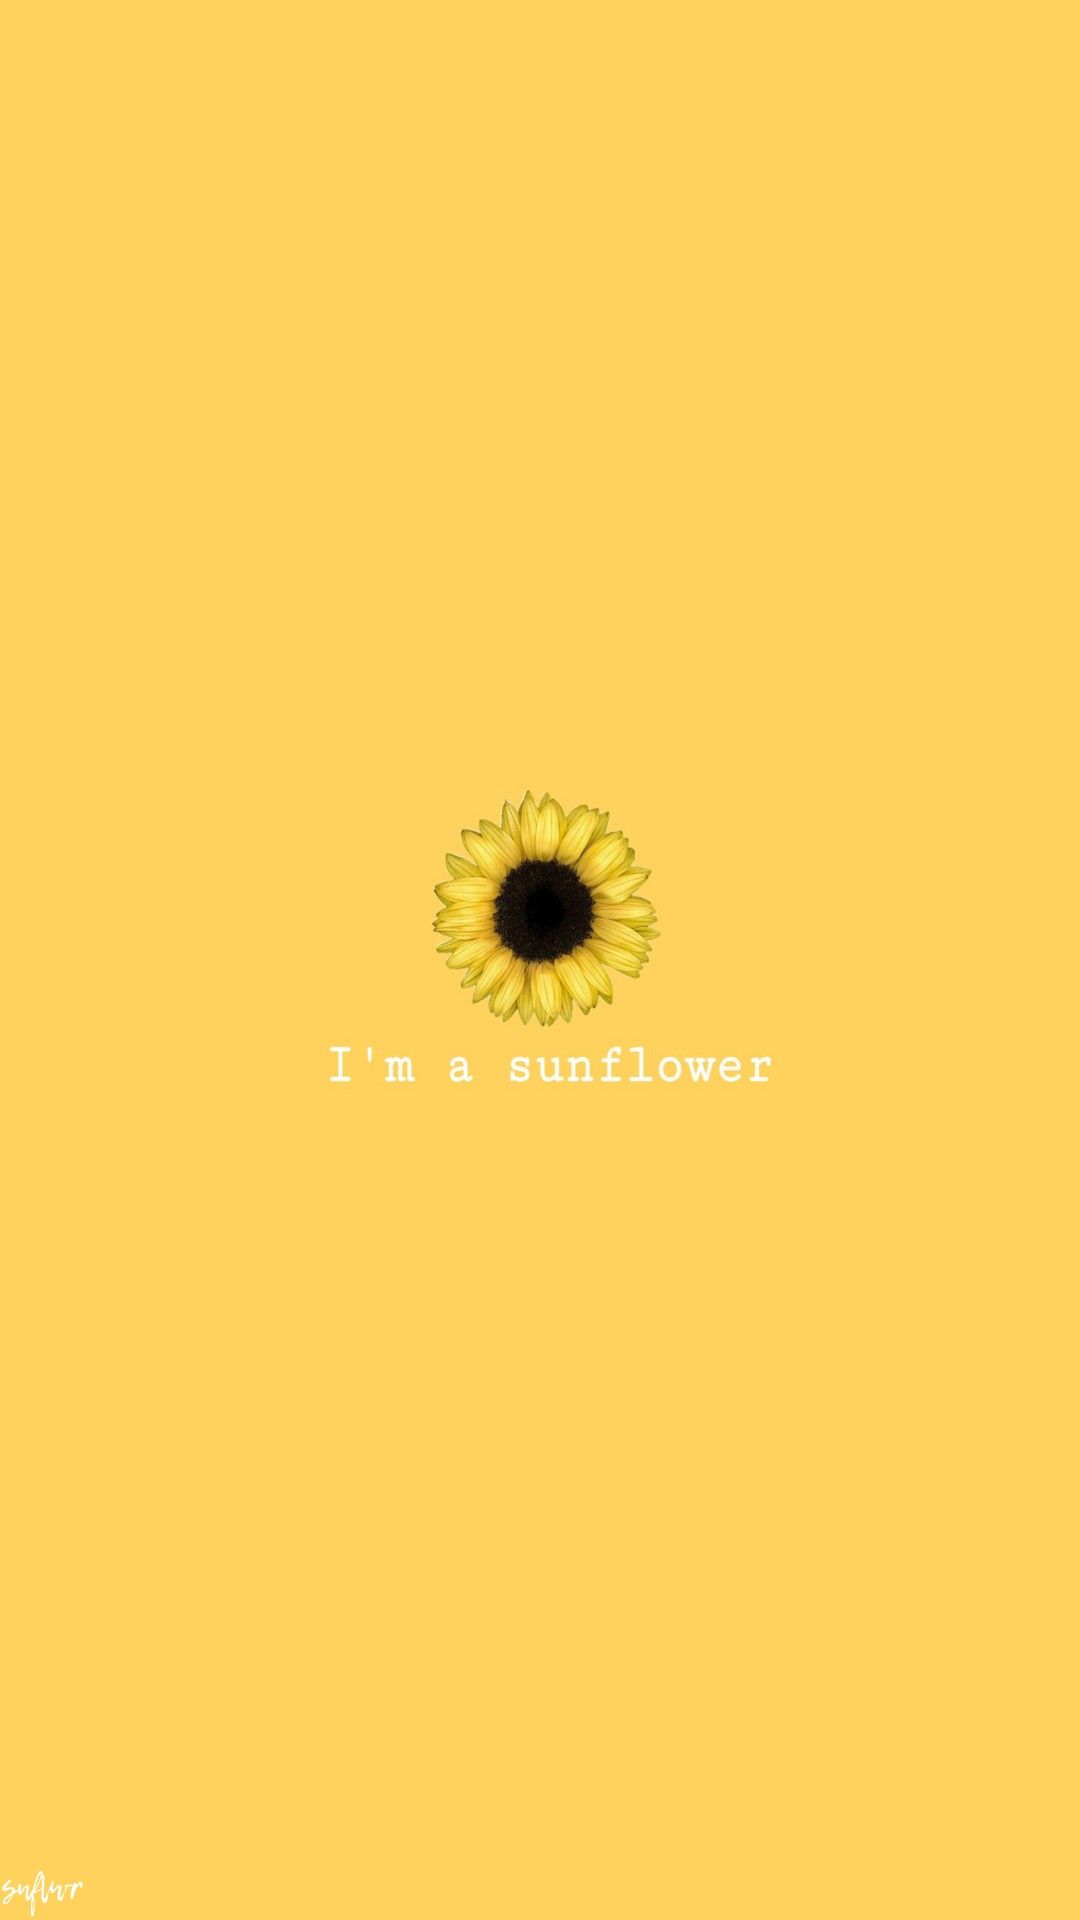 28+] Yellow Sunflower Wallpapers - WallpaperSafari